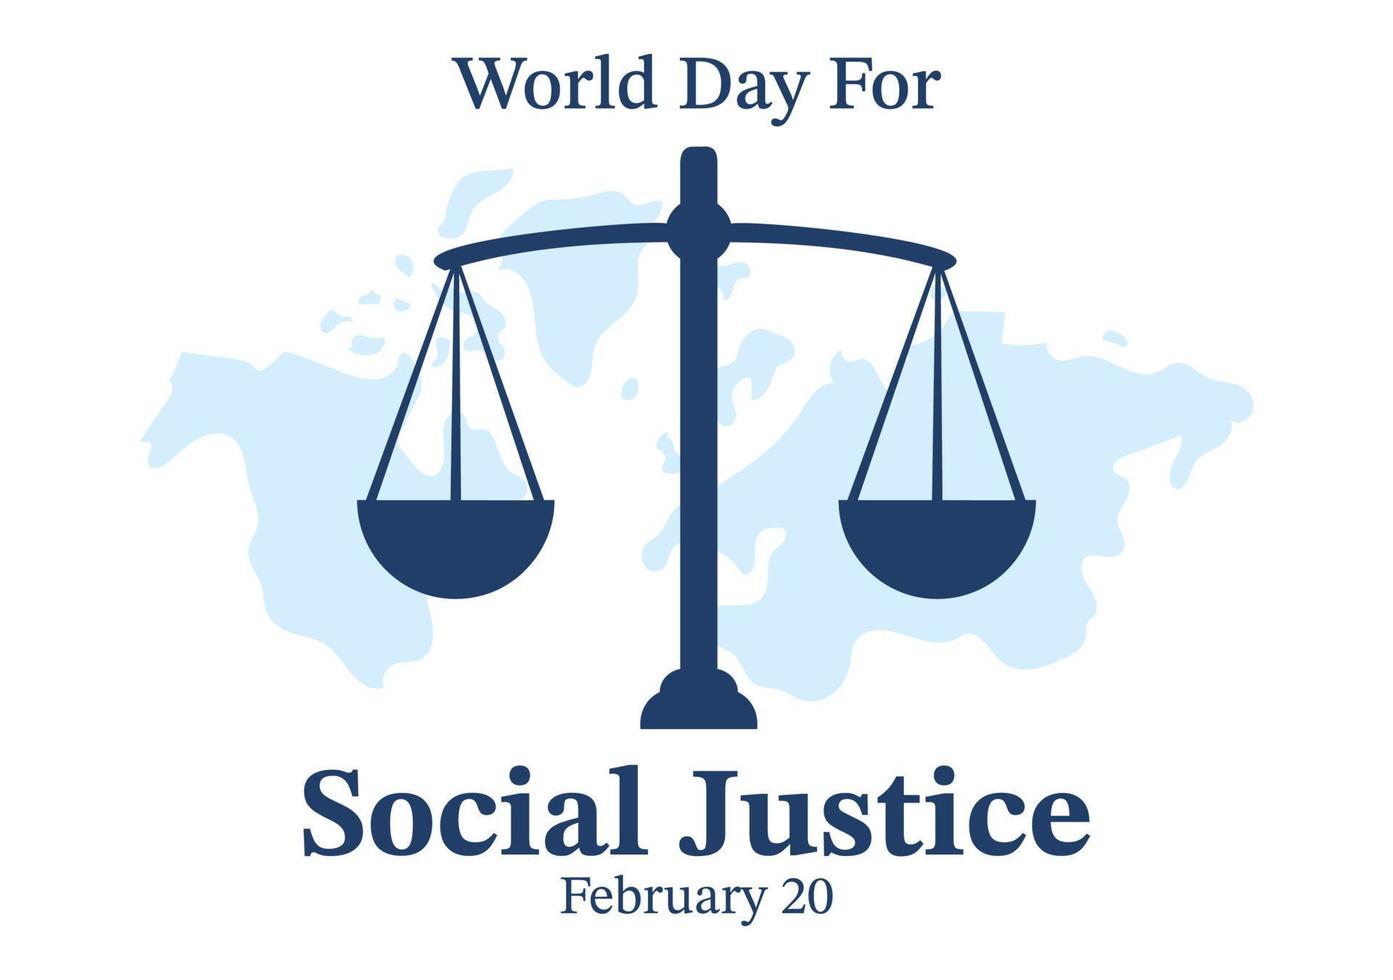 día mundial de la justicia social el 20 de febrero con escamas o martillo para una relación justa en dibujos animados planos dibujados a mano ilustración de plantillas vector